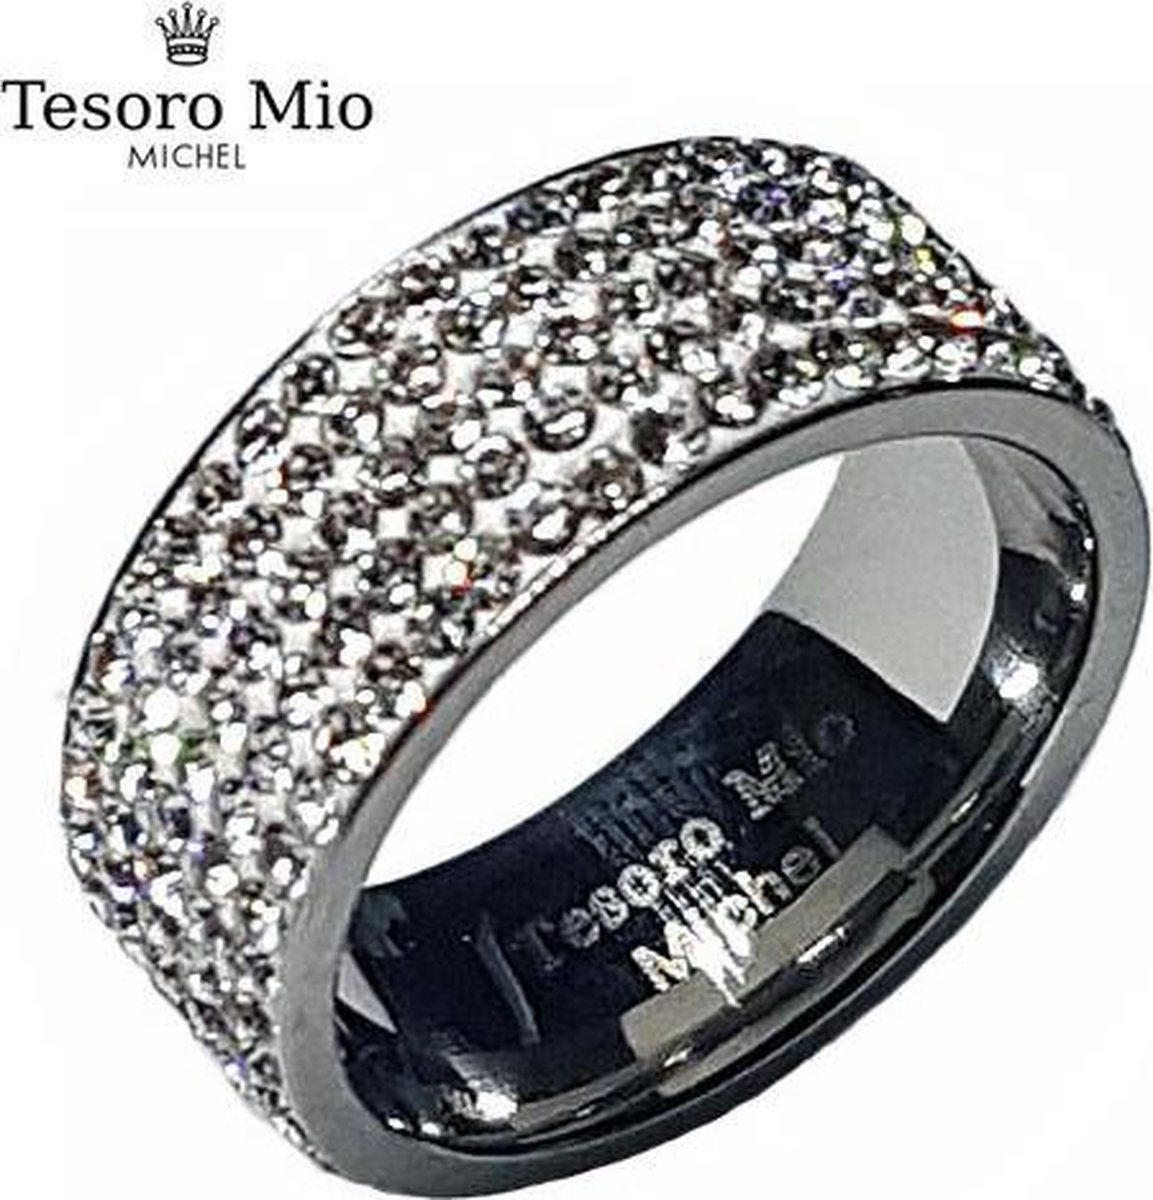 Edelstaal dames ring met zuivere zirkonia steentjes van Tesoro Mio Michel (maat 54, 17,2 mm)